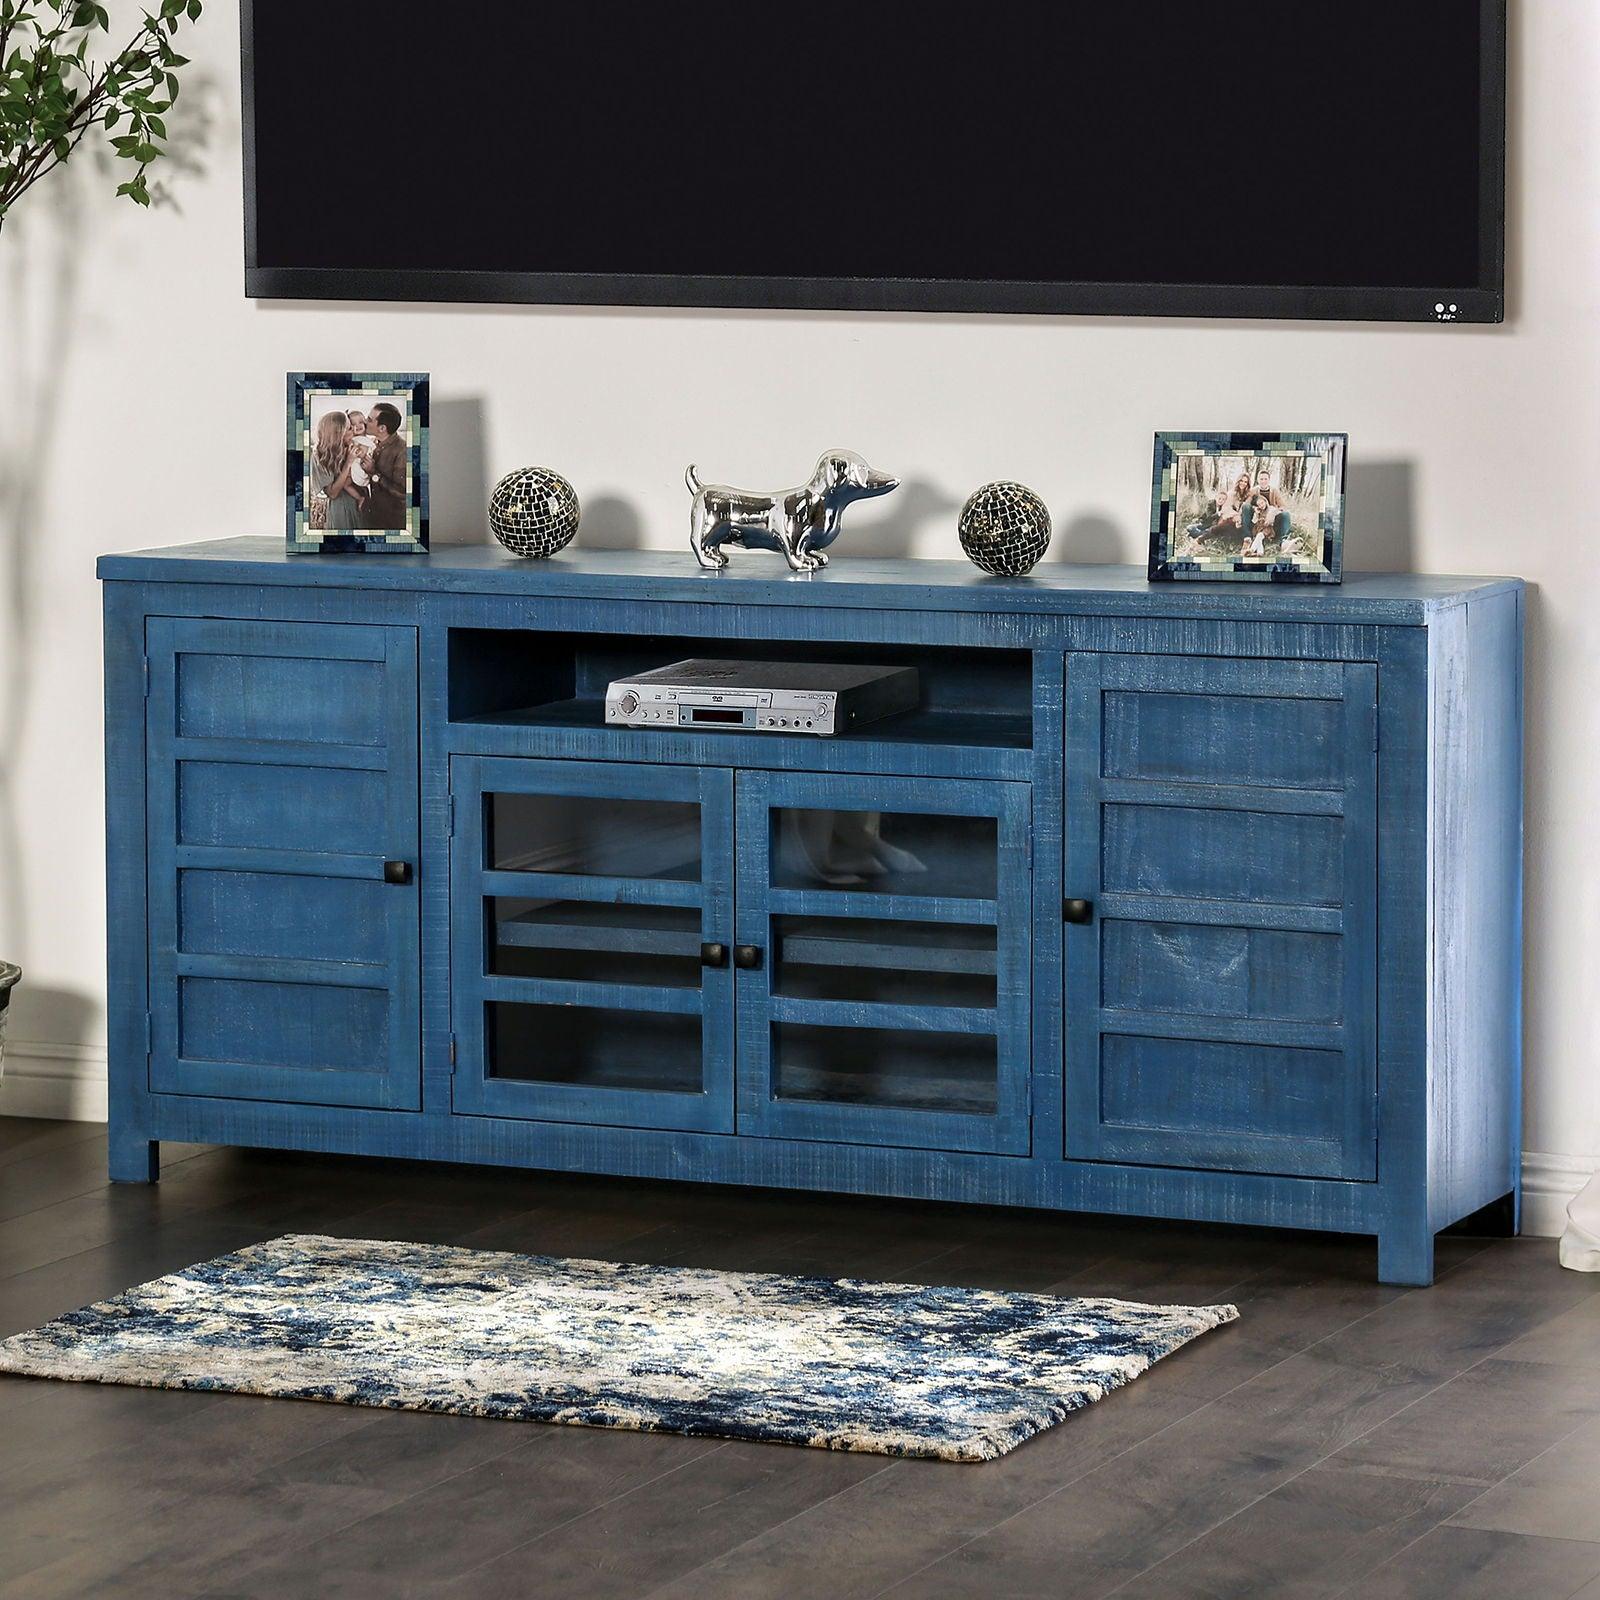 Furniture of America - Tedra - TV Console - Denin Blue - 5th Avenue Furniture